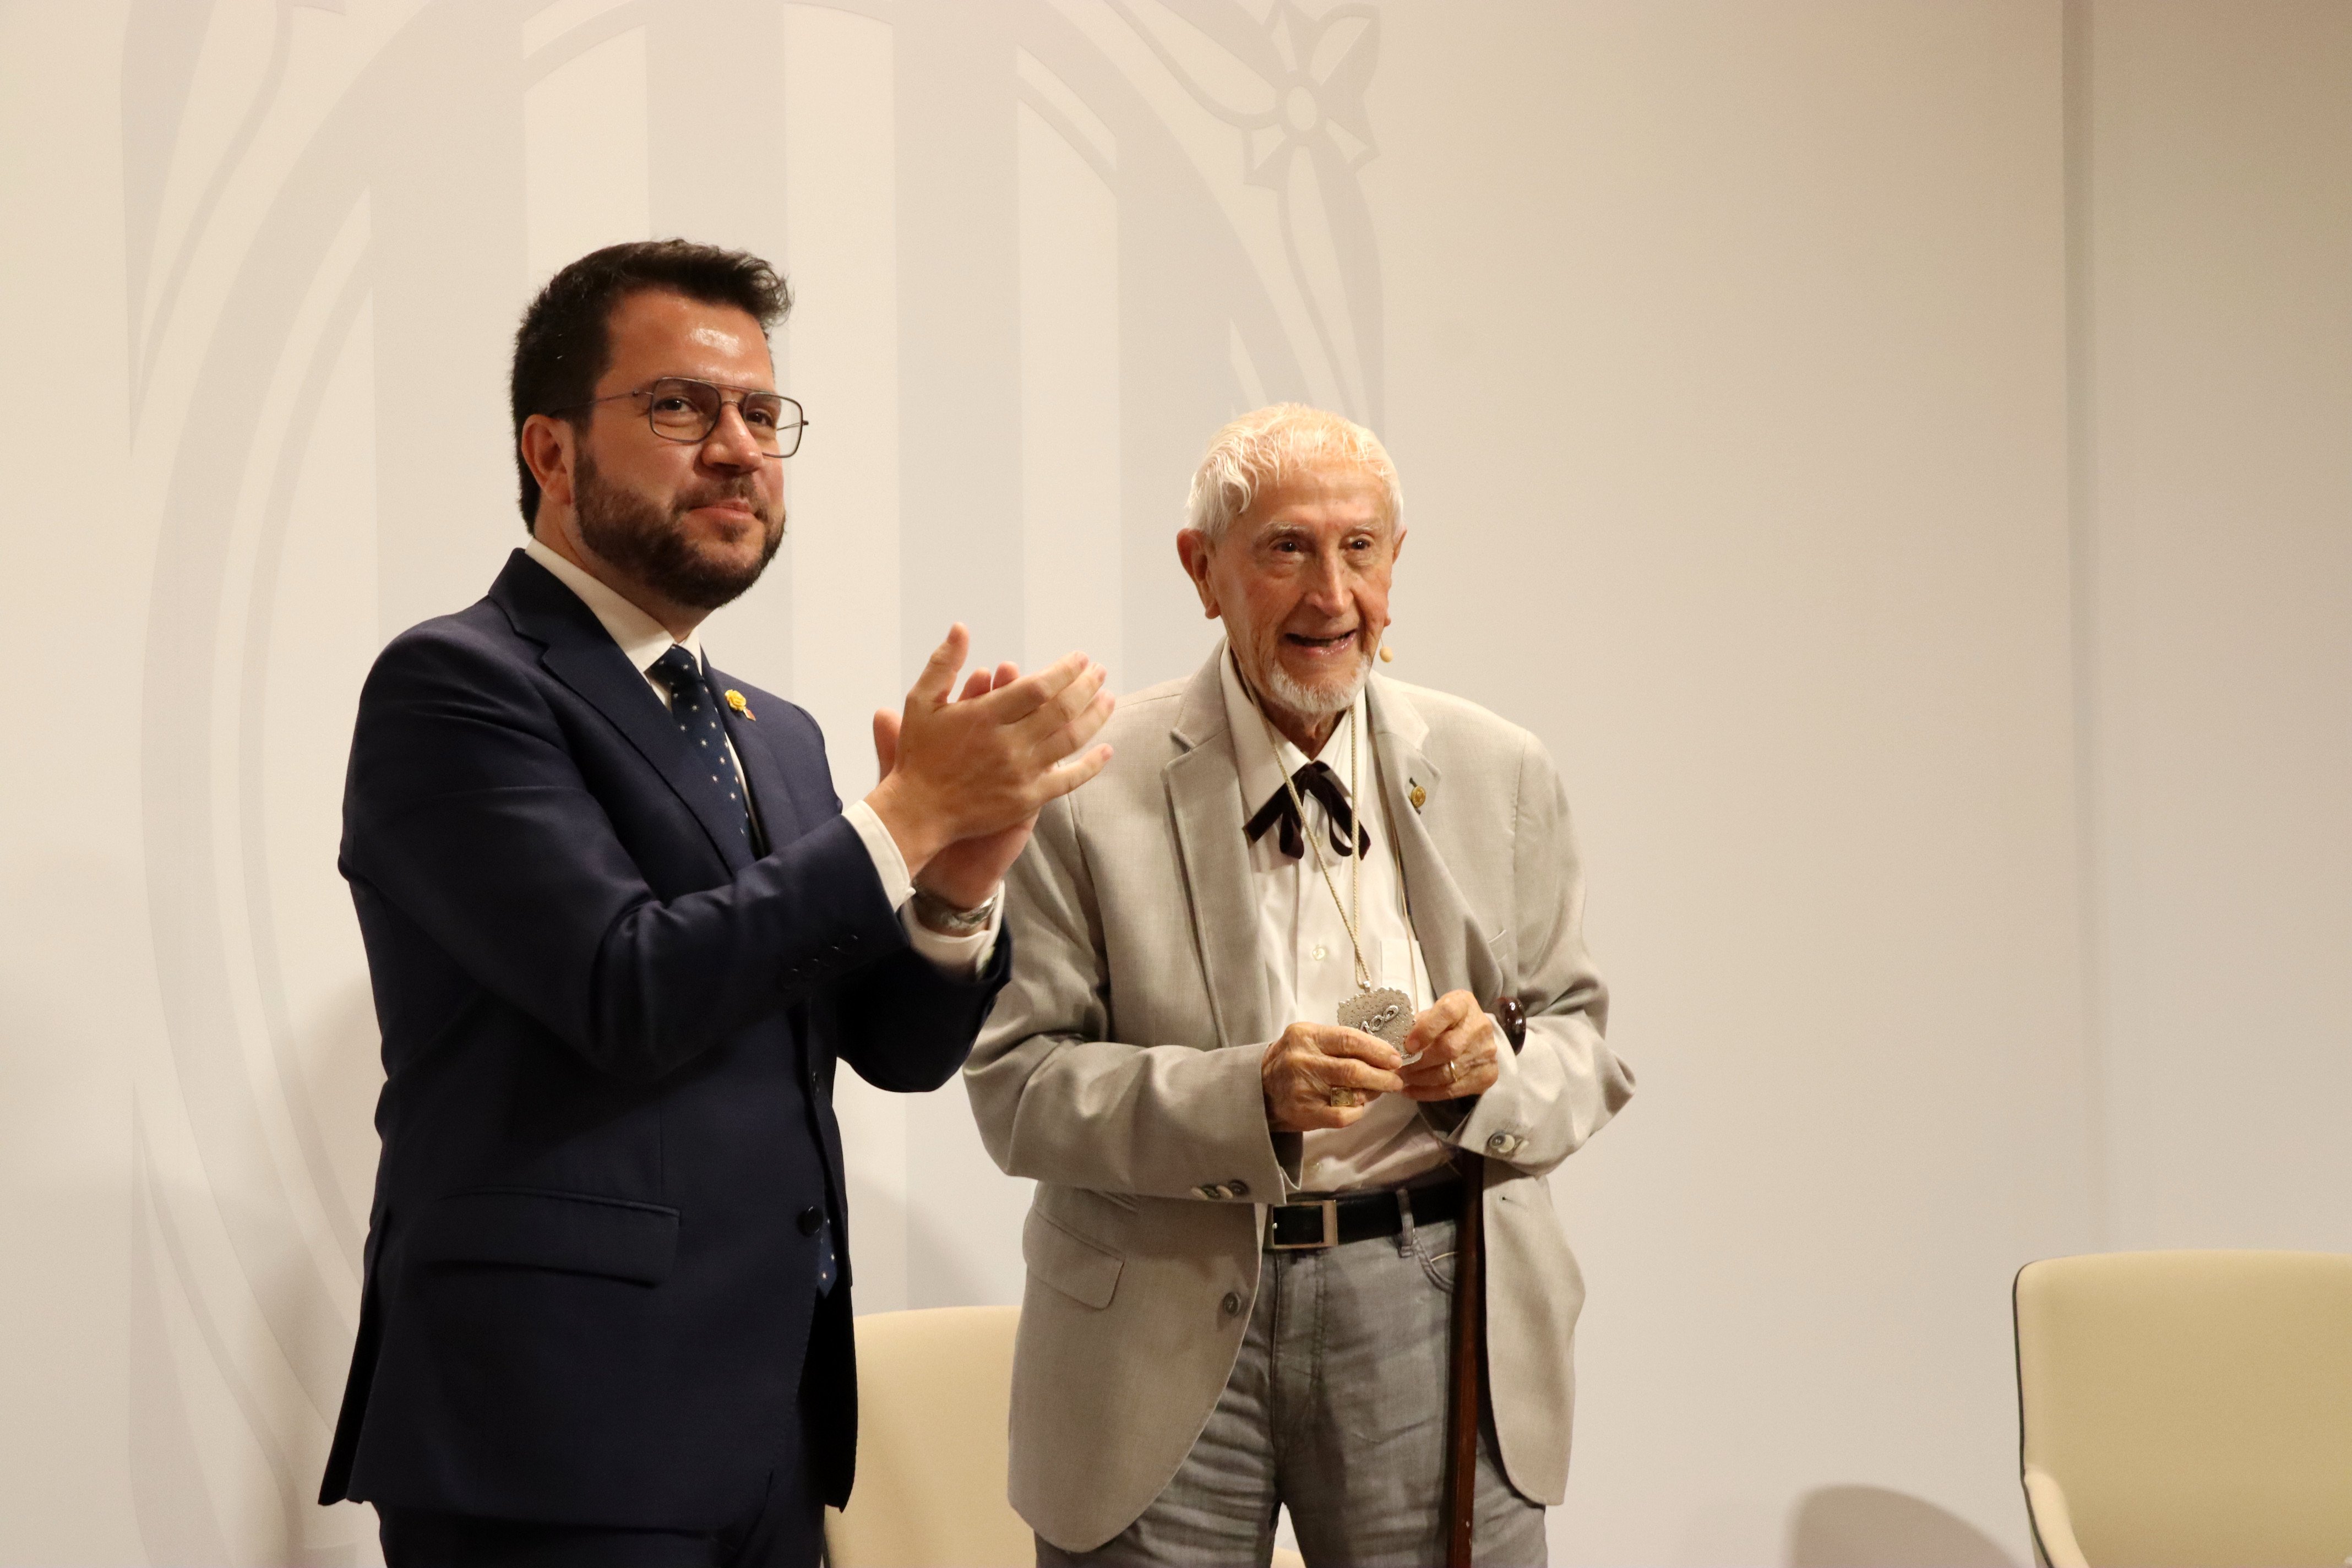 Josep Vallverdú, medalla centenaria de la Generalitat: "La lengua retrocede porque no se usa lo suficiente"